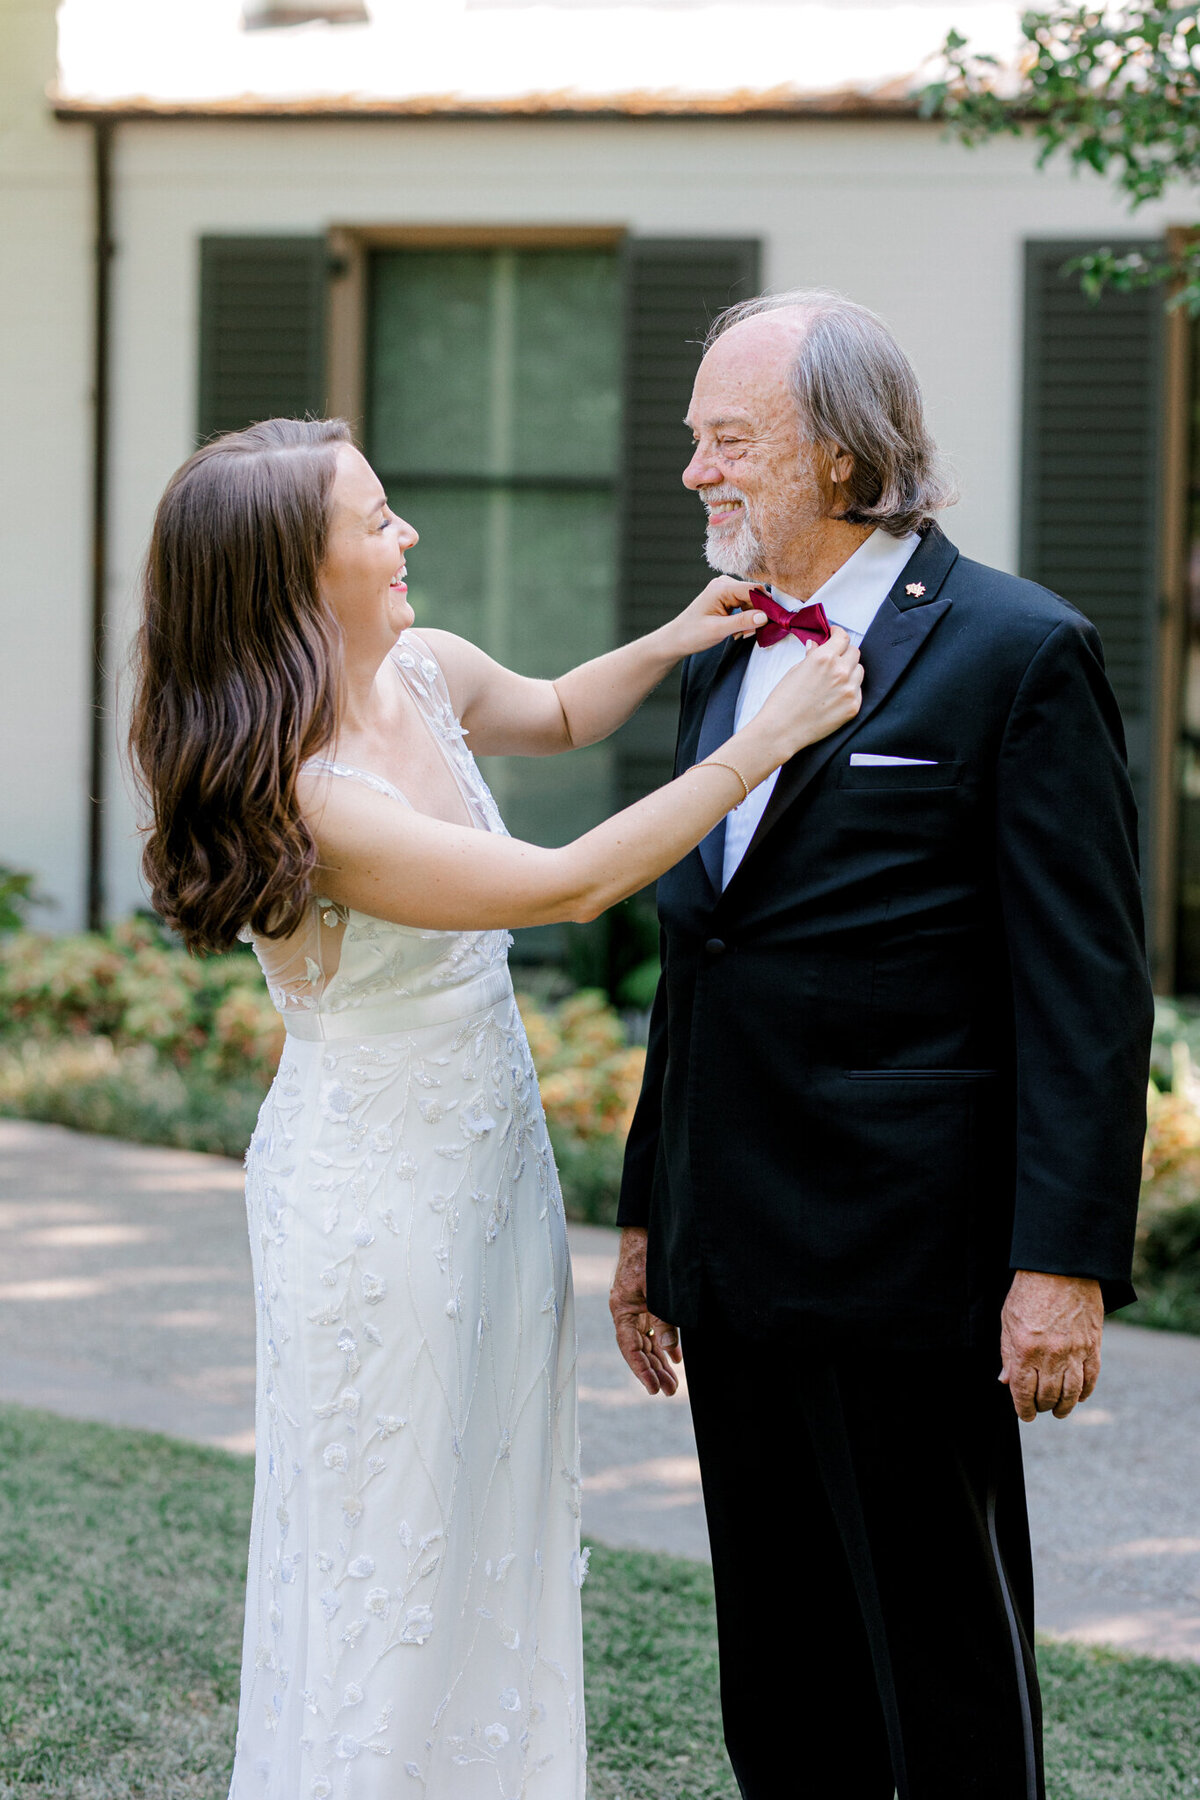 Gena & Matt's Wedding at the Dallas Arboretum | Dallas Wedding Photographer | Sami Kathryn Photography-122